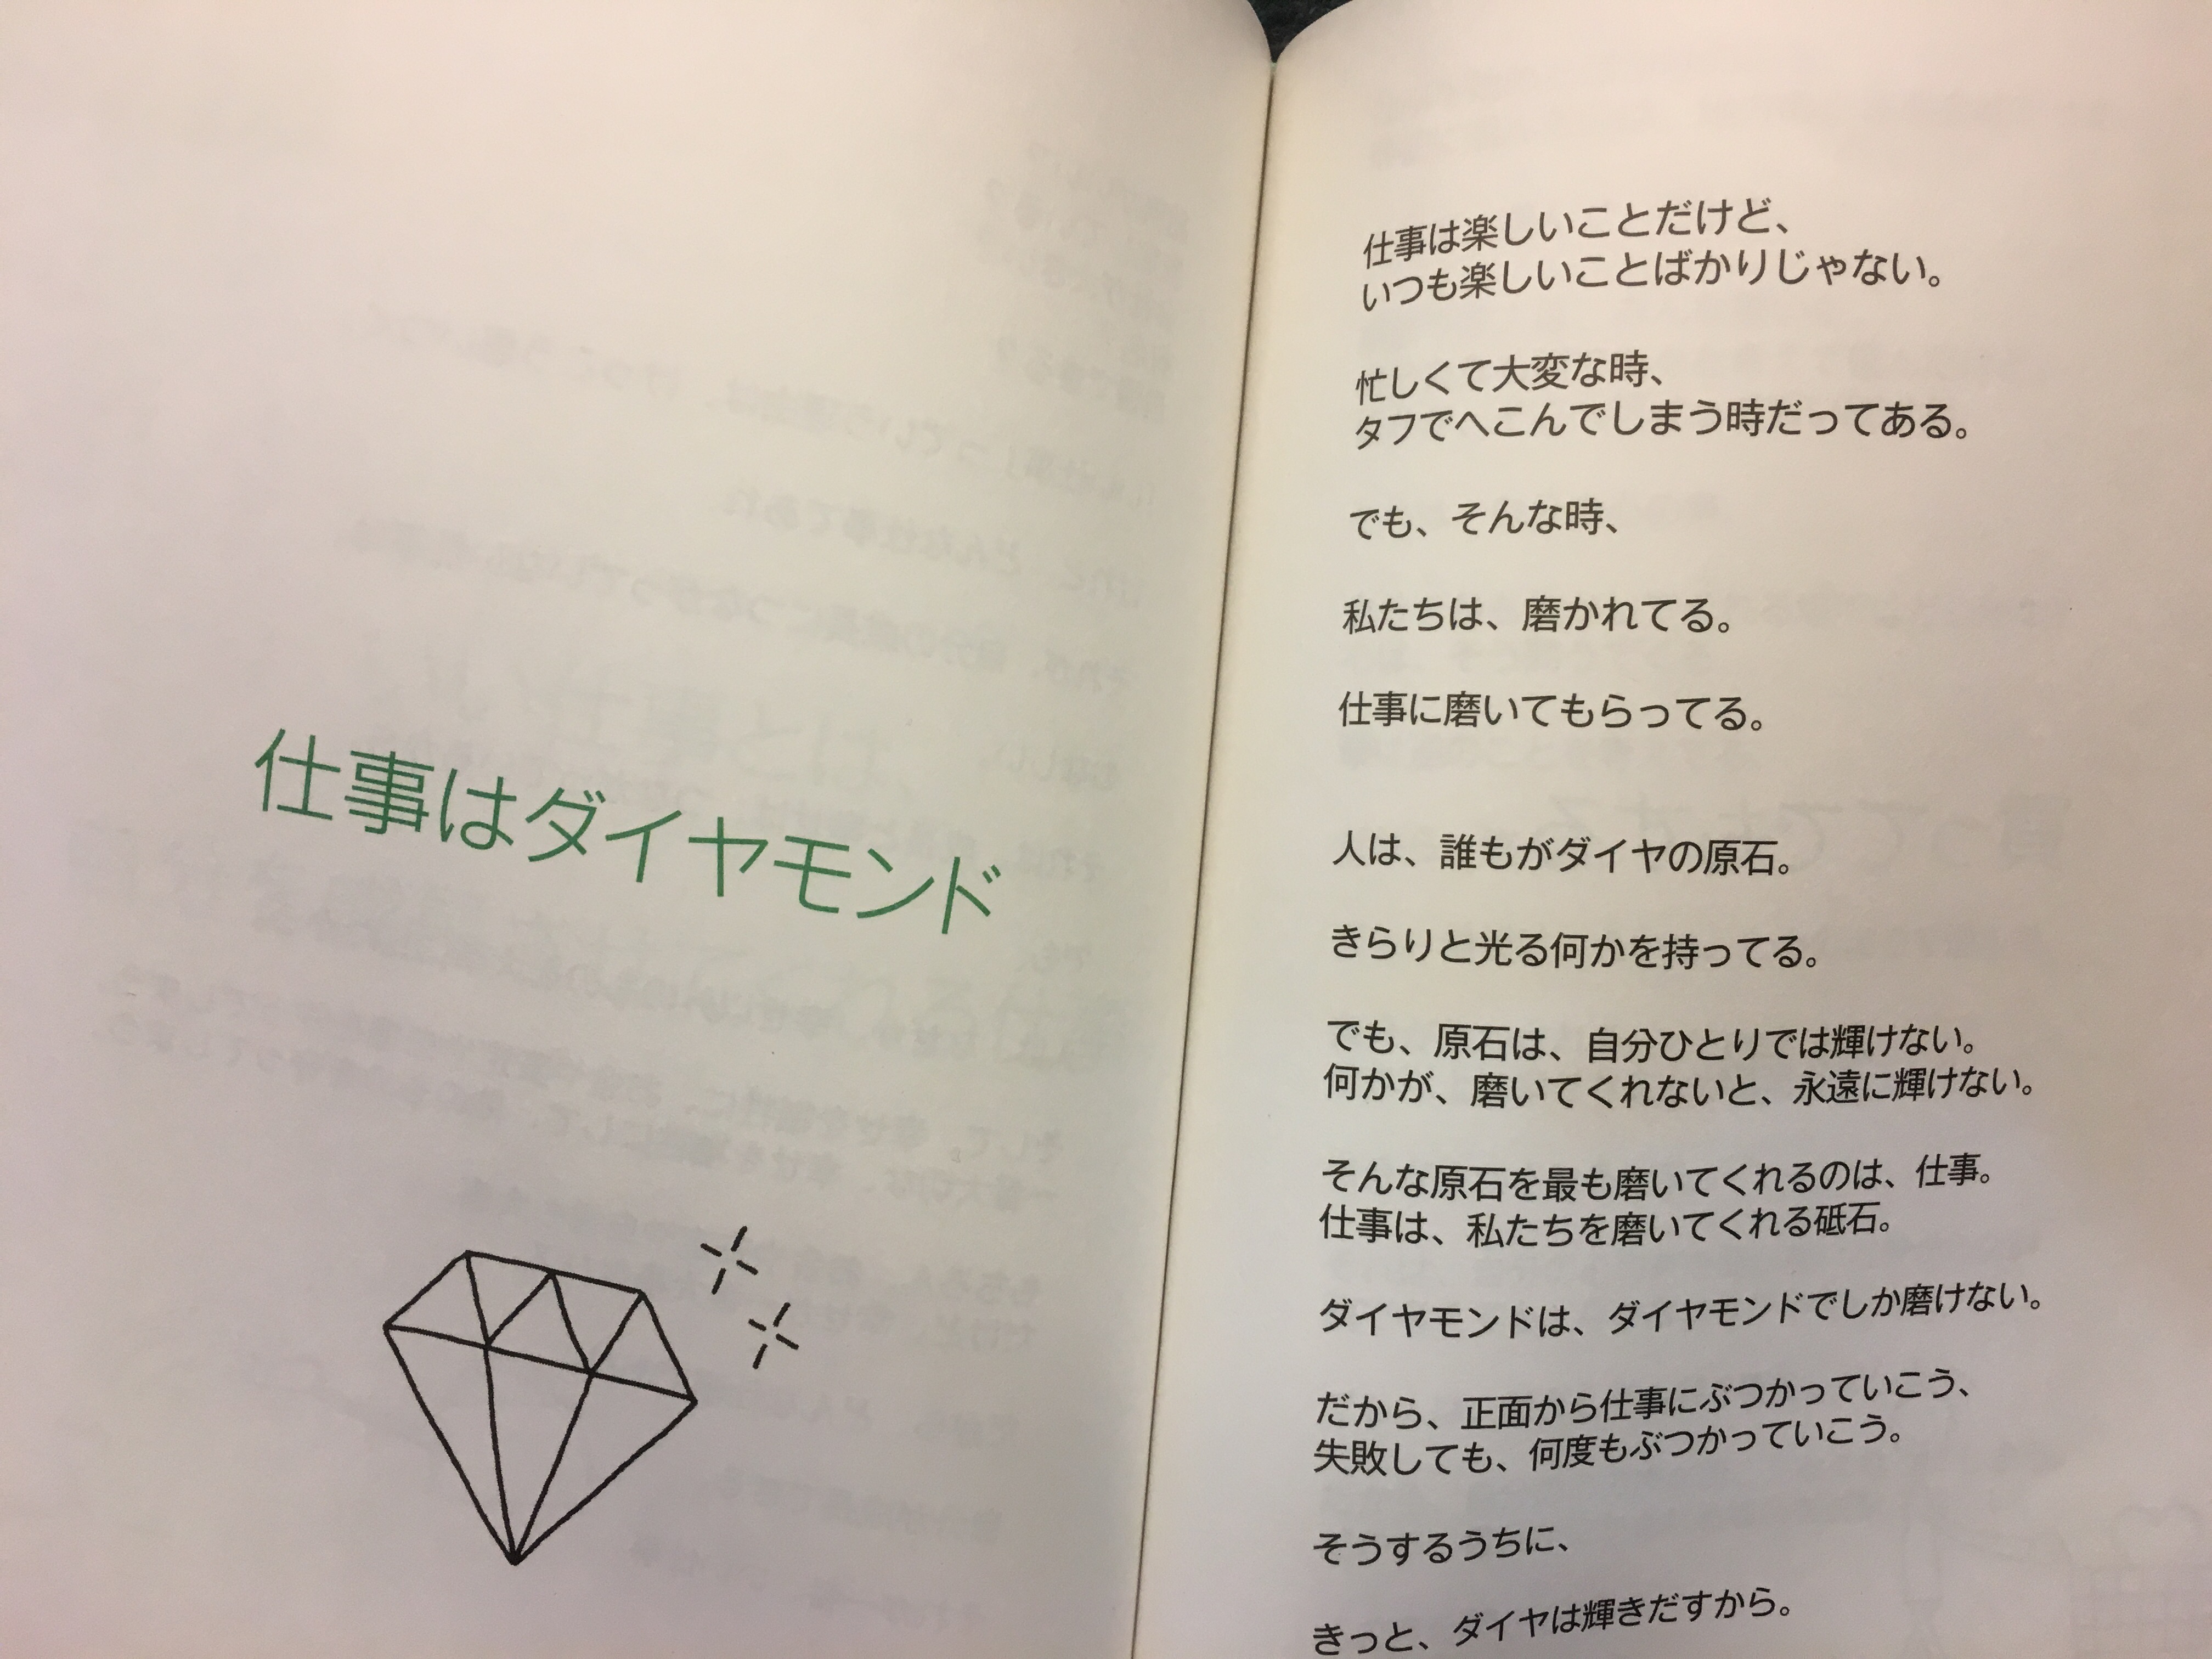 浜口隆則の経営論『仕事は味方』Vol.34:仕事はダイヤモンド